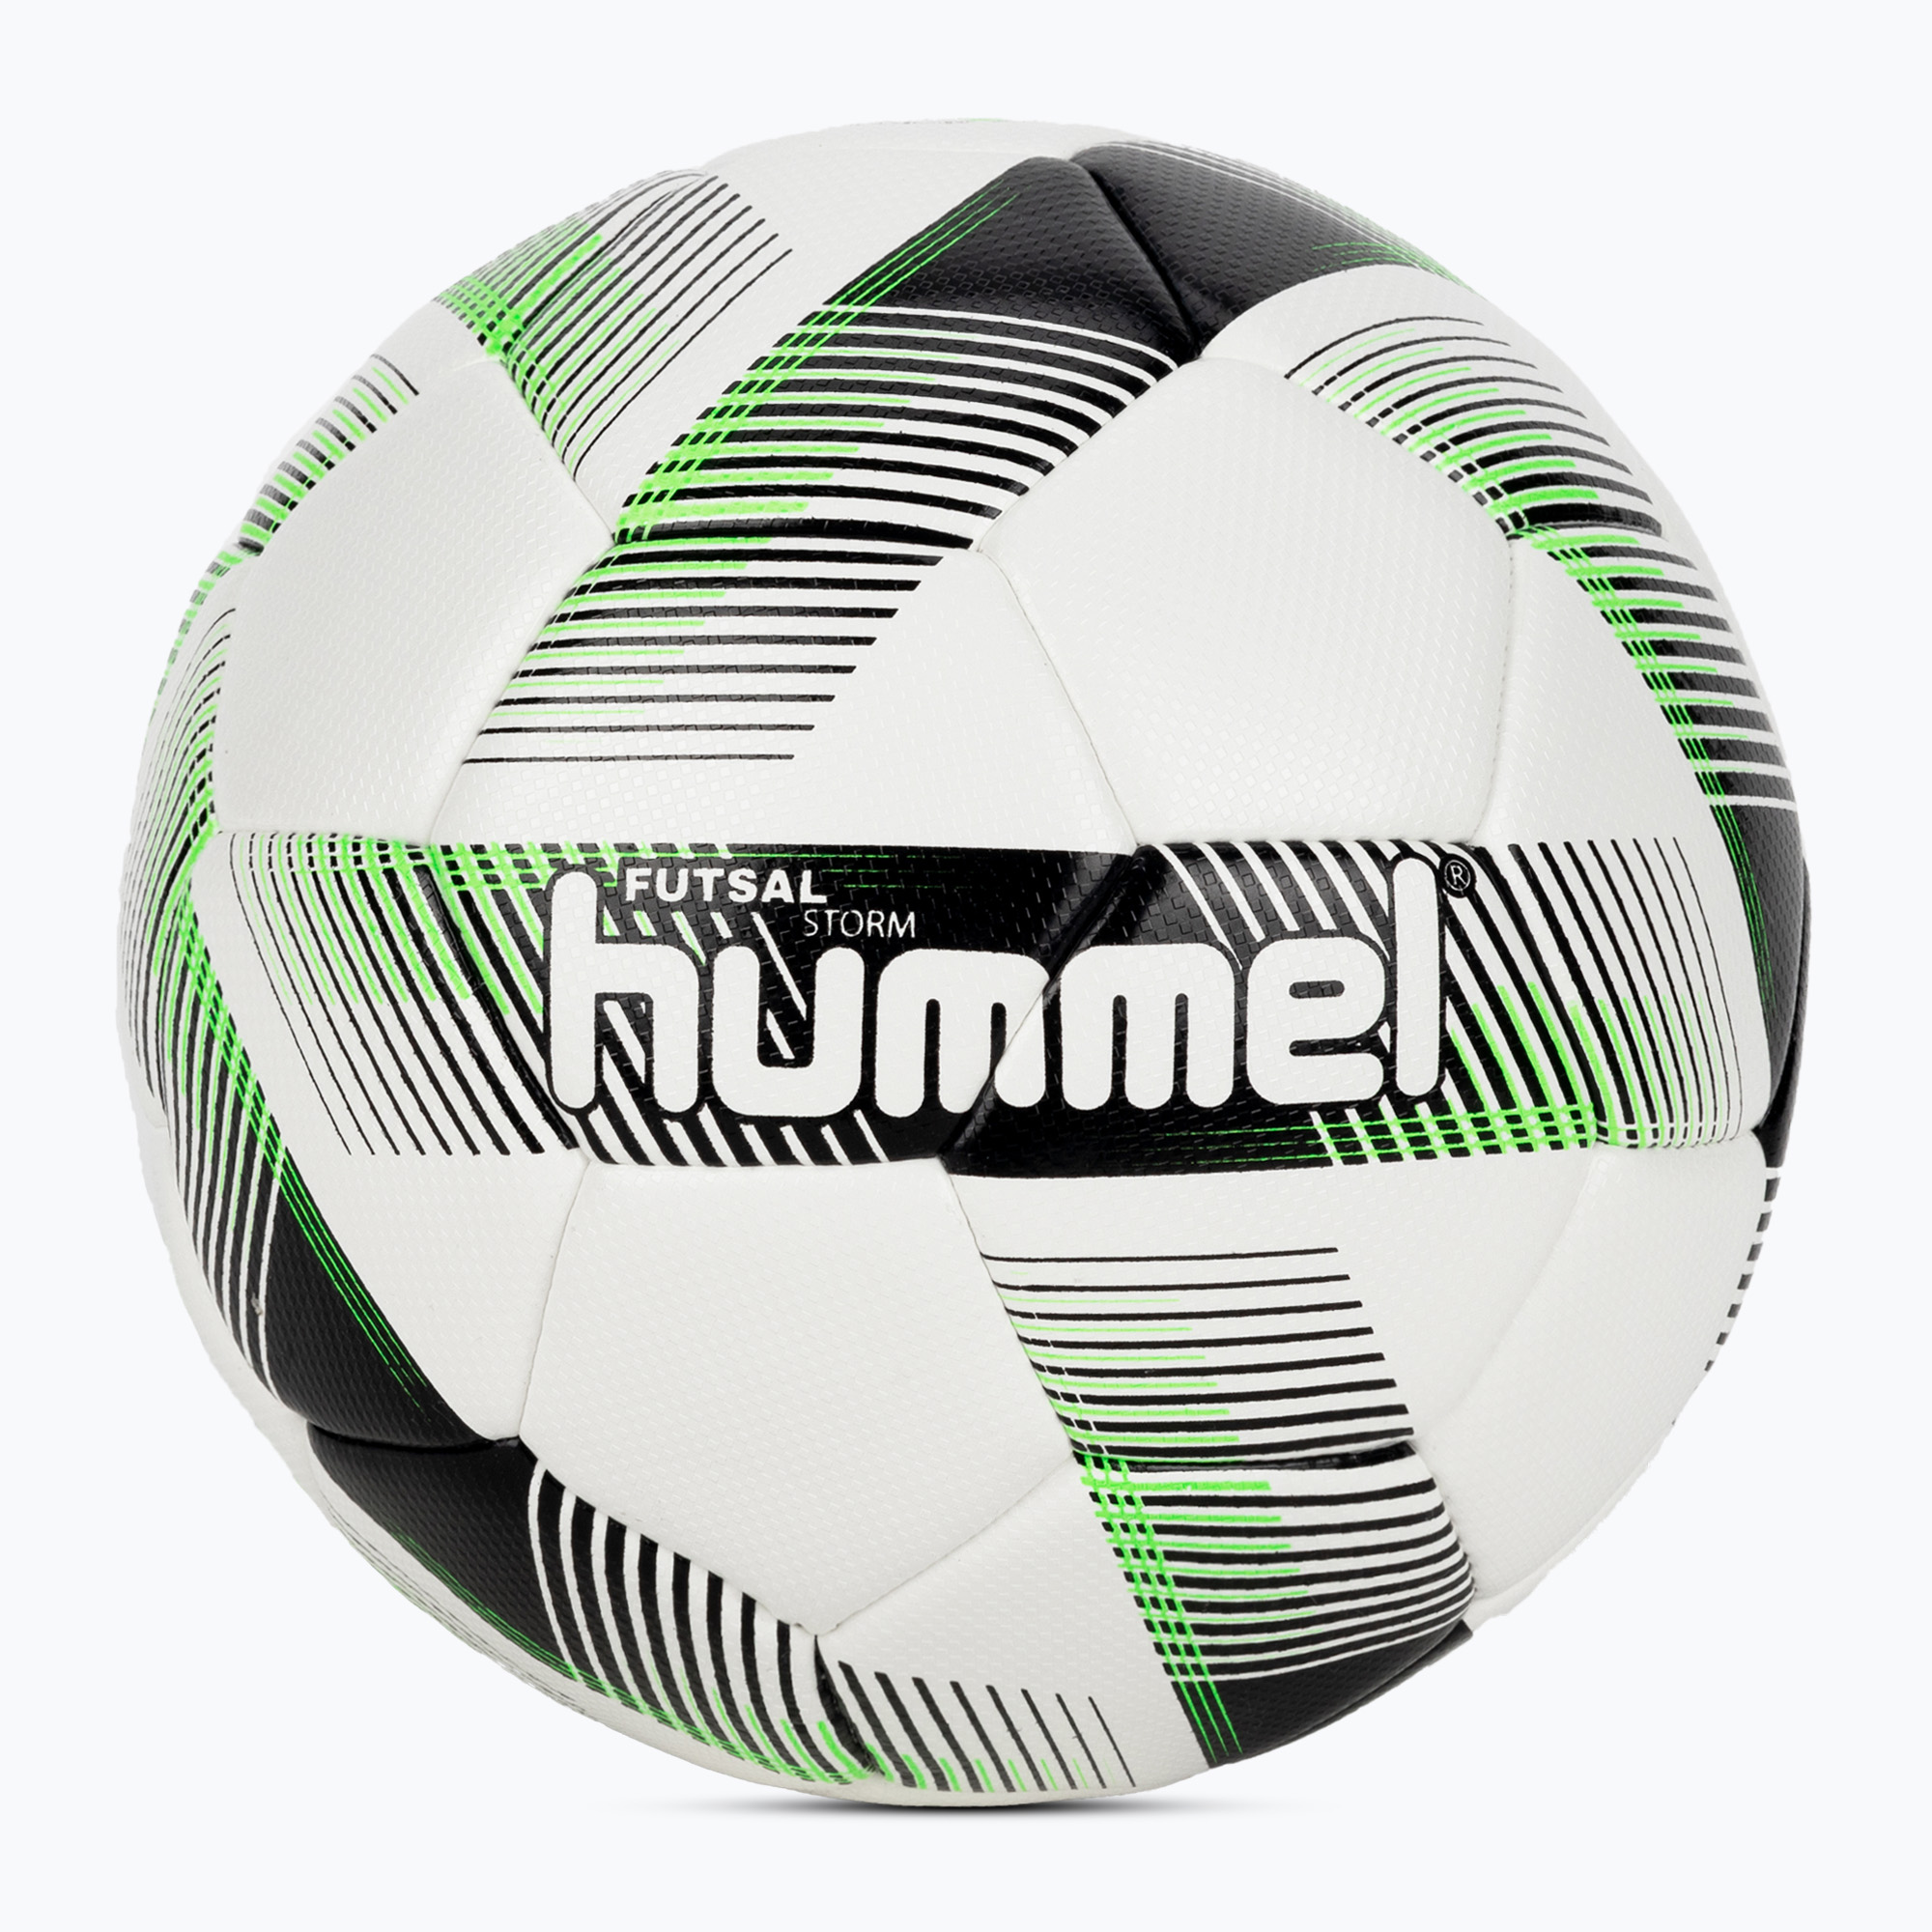 Hummel Storm FB футболна топка бяло/черно/зелено размер 4